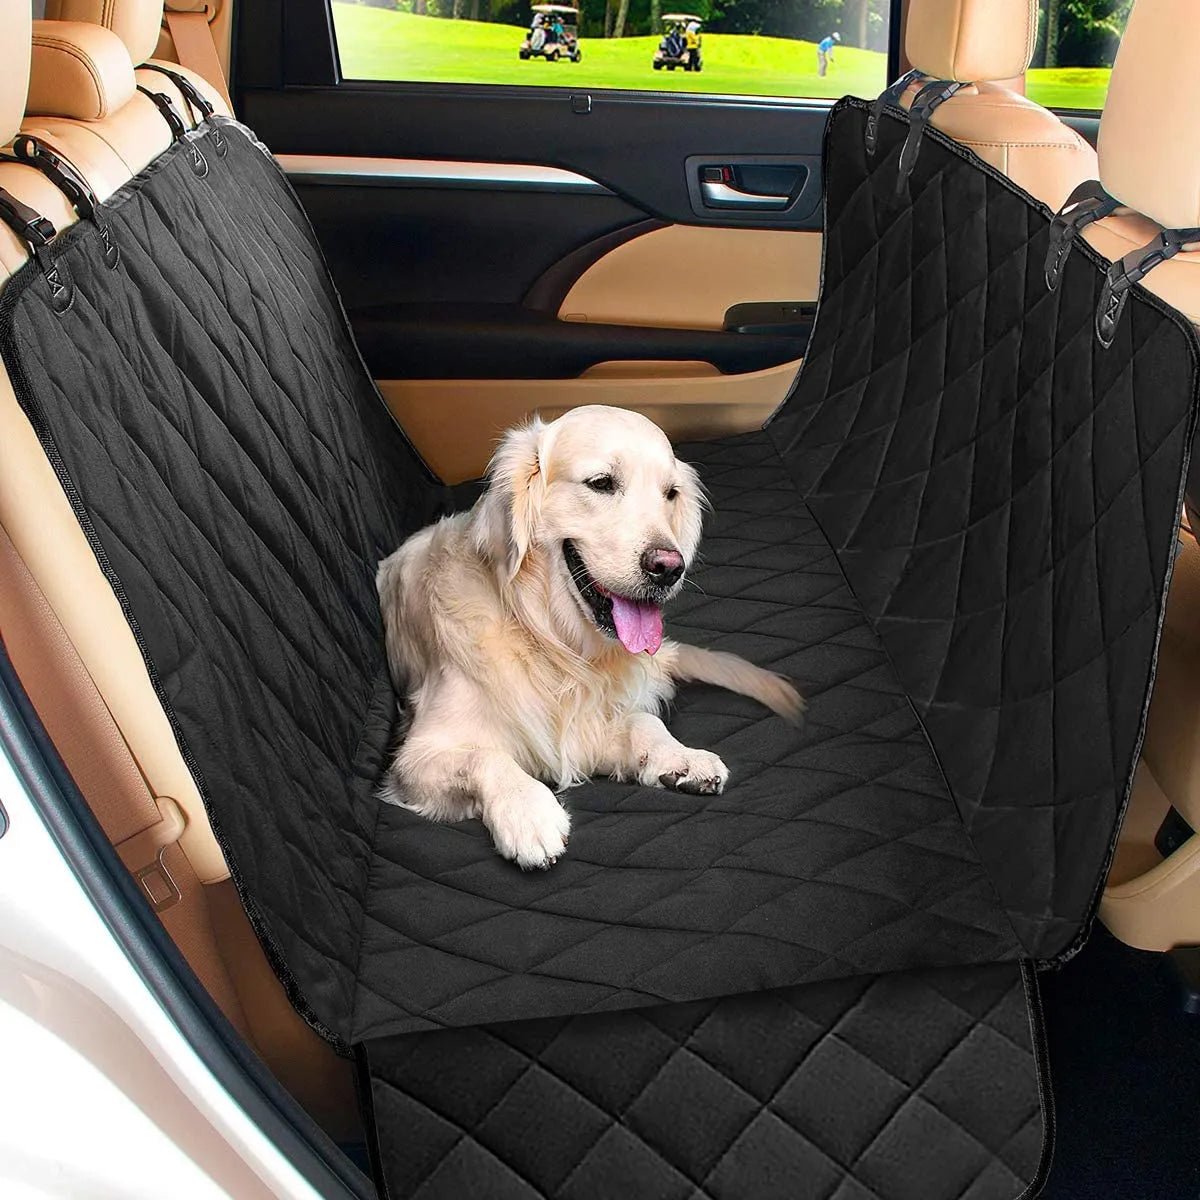 housse de protection siège voiture pour chien - monchiendamour.com